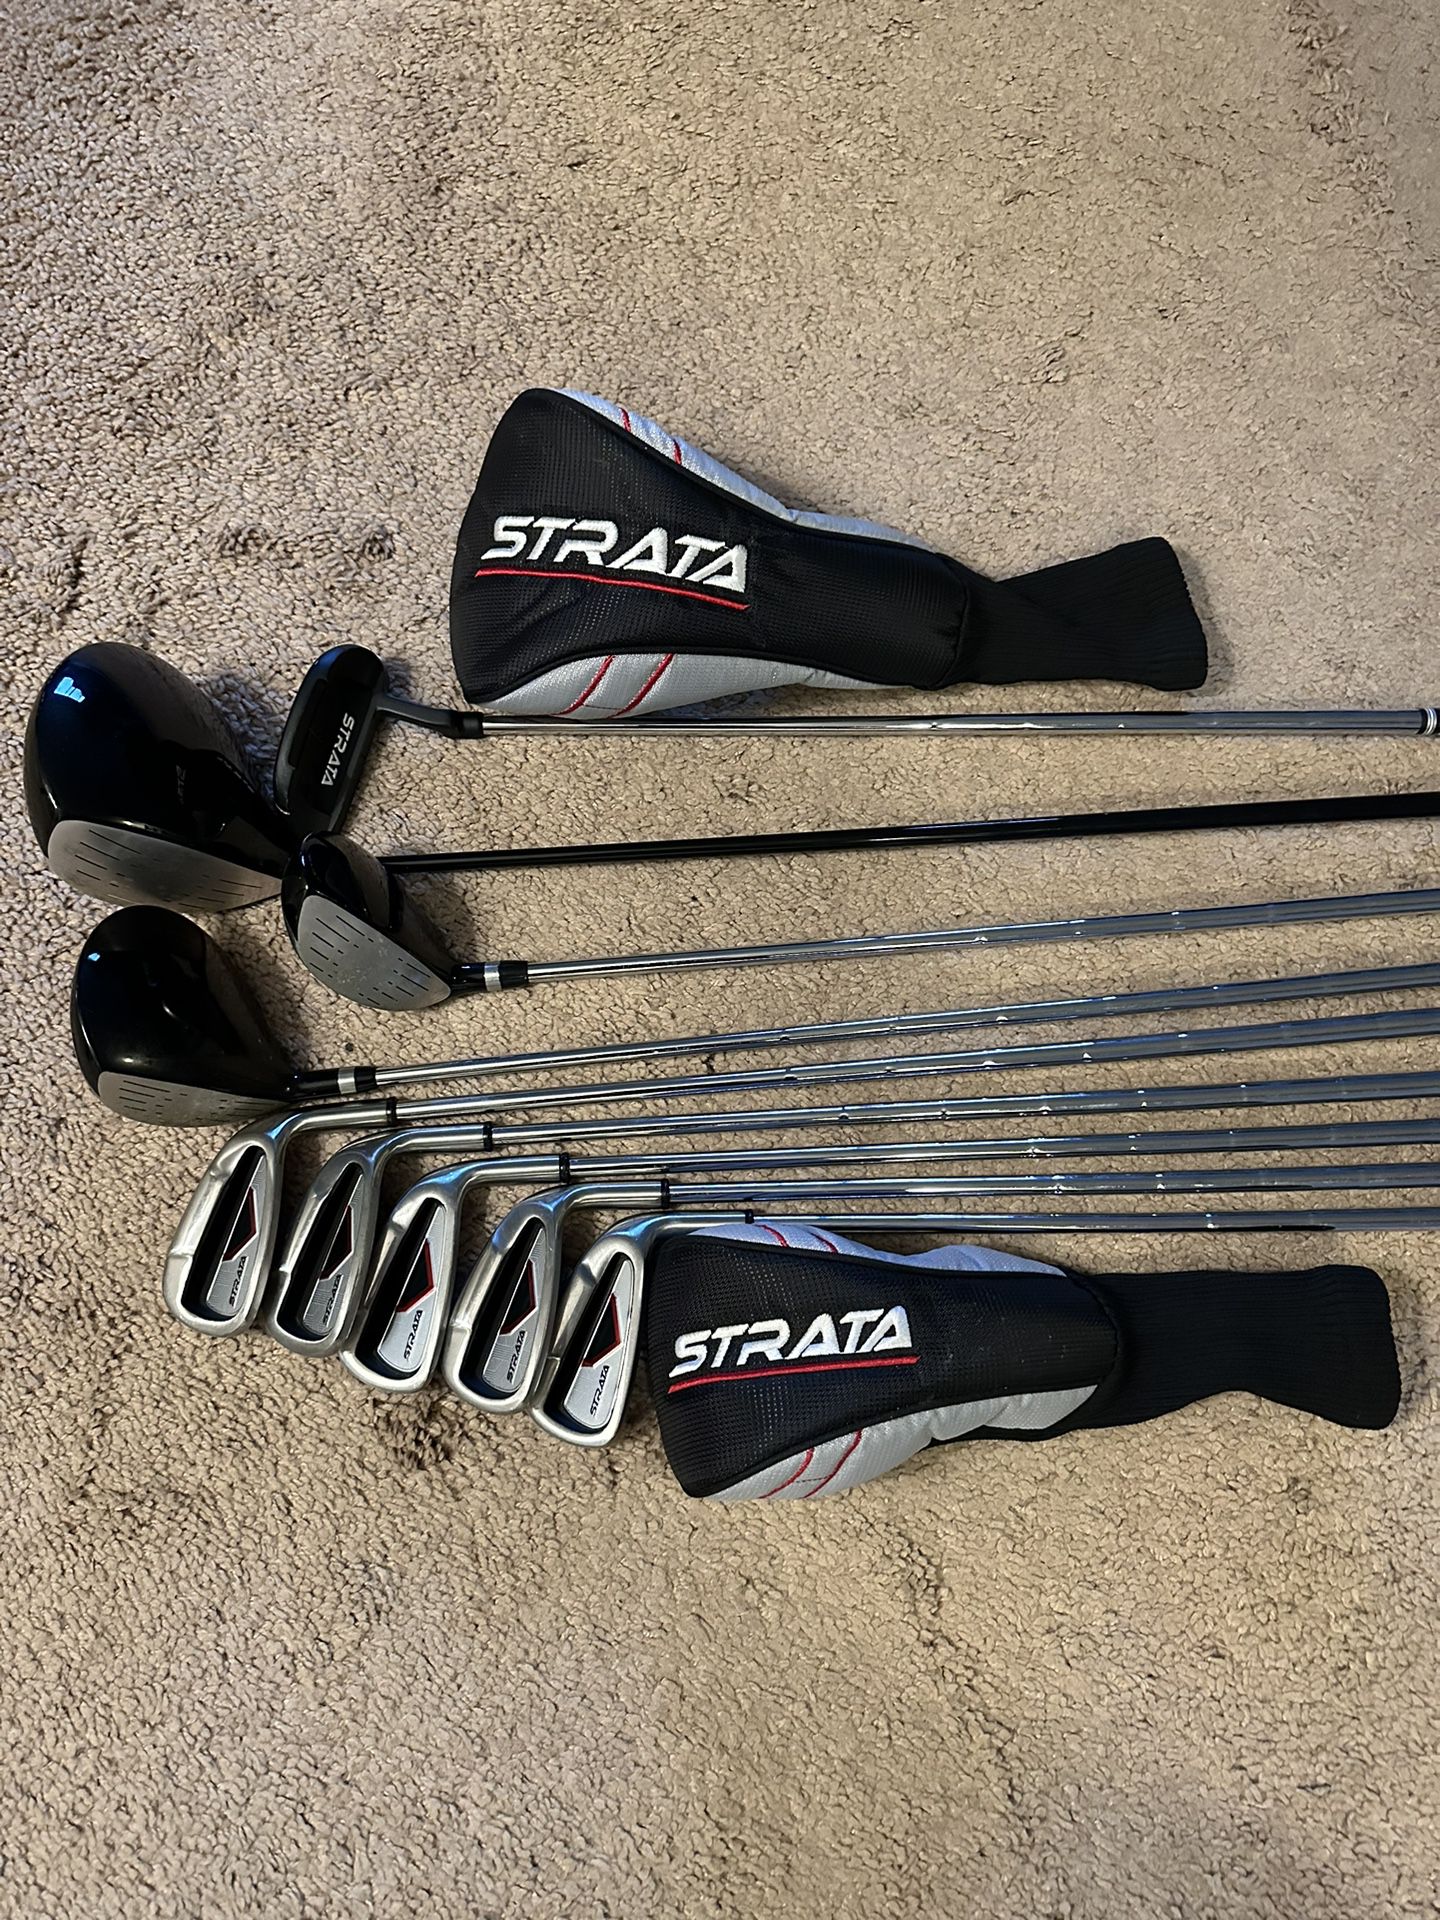 Strata Men’s Golf Club Set